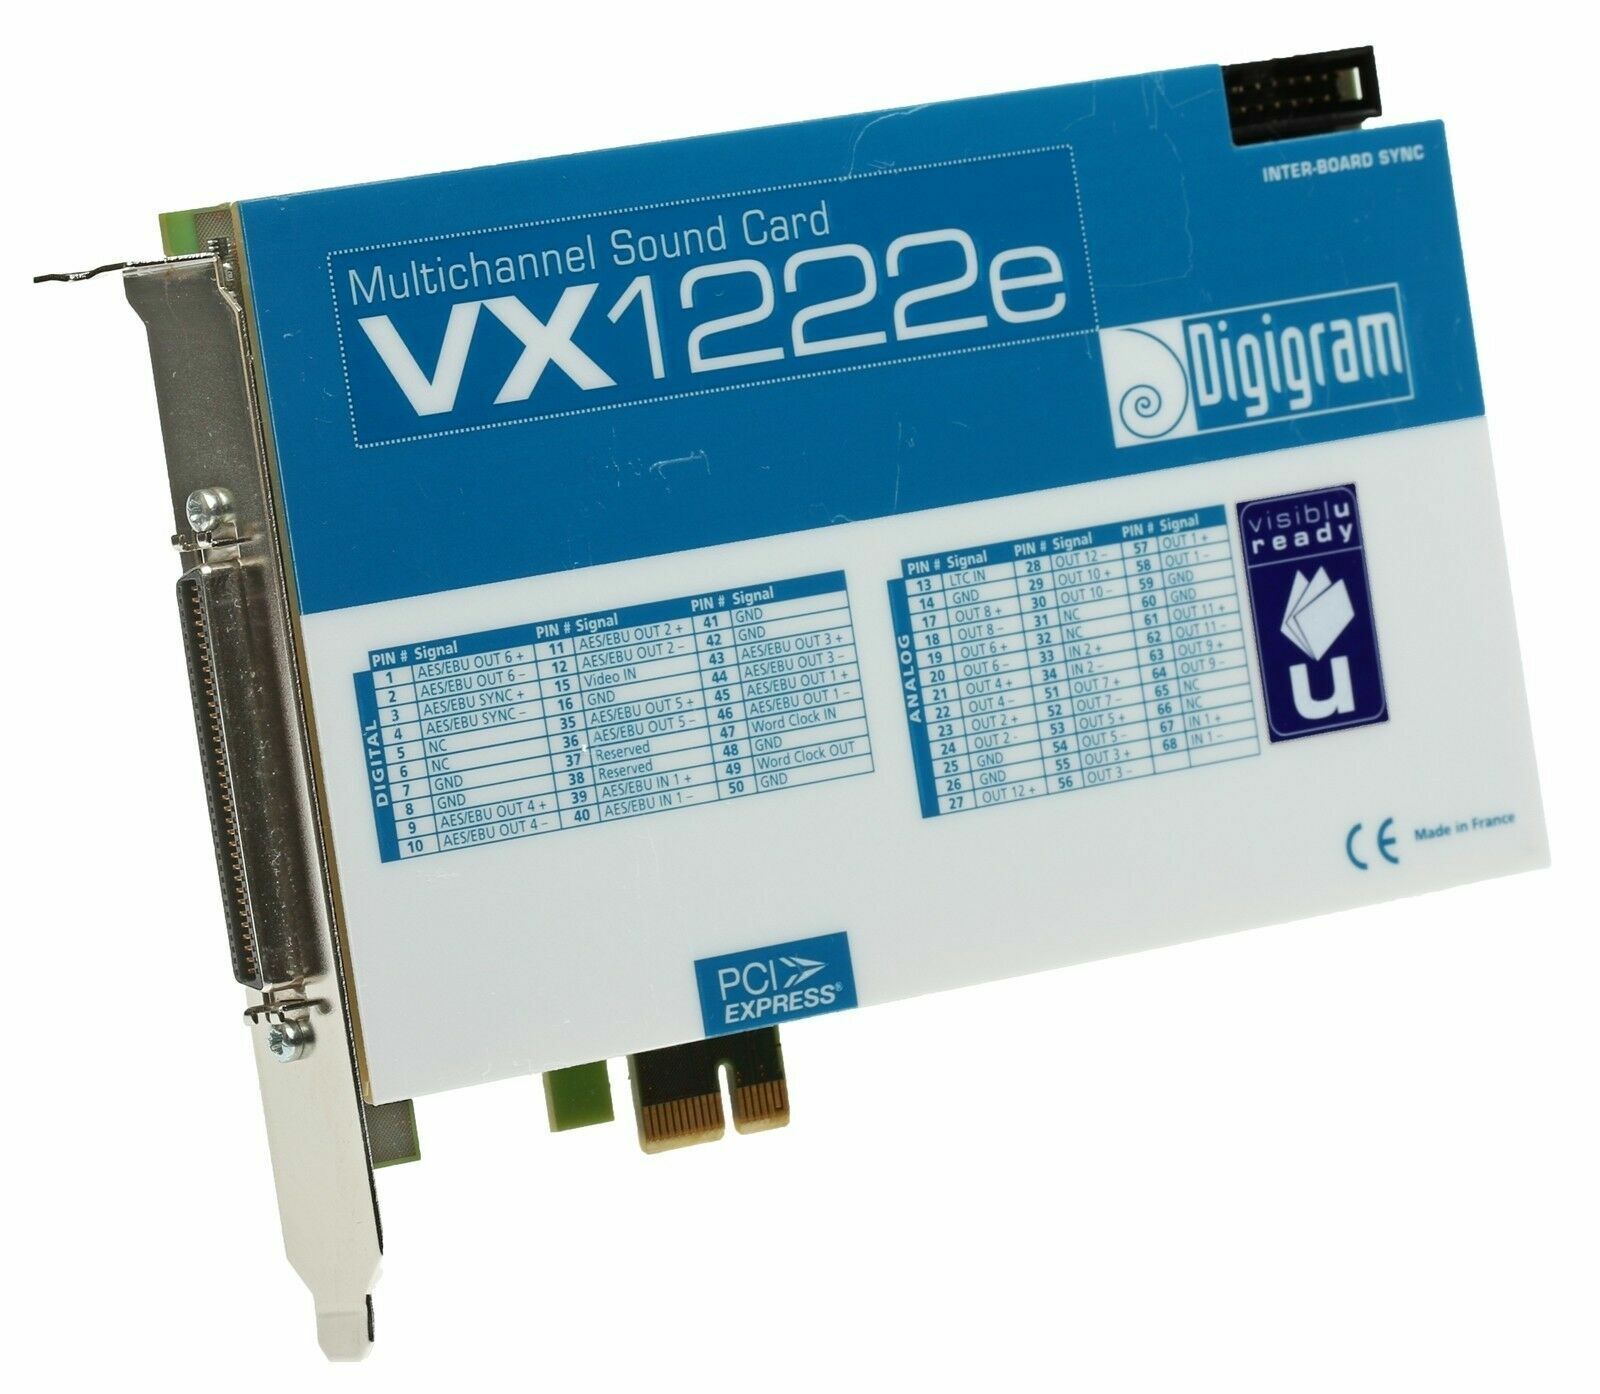 Digigram VX1222e 12 Channel AES Digital/Analog 192kHz 24Bit Broadcast Sound Card